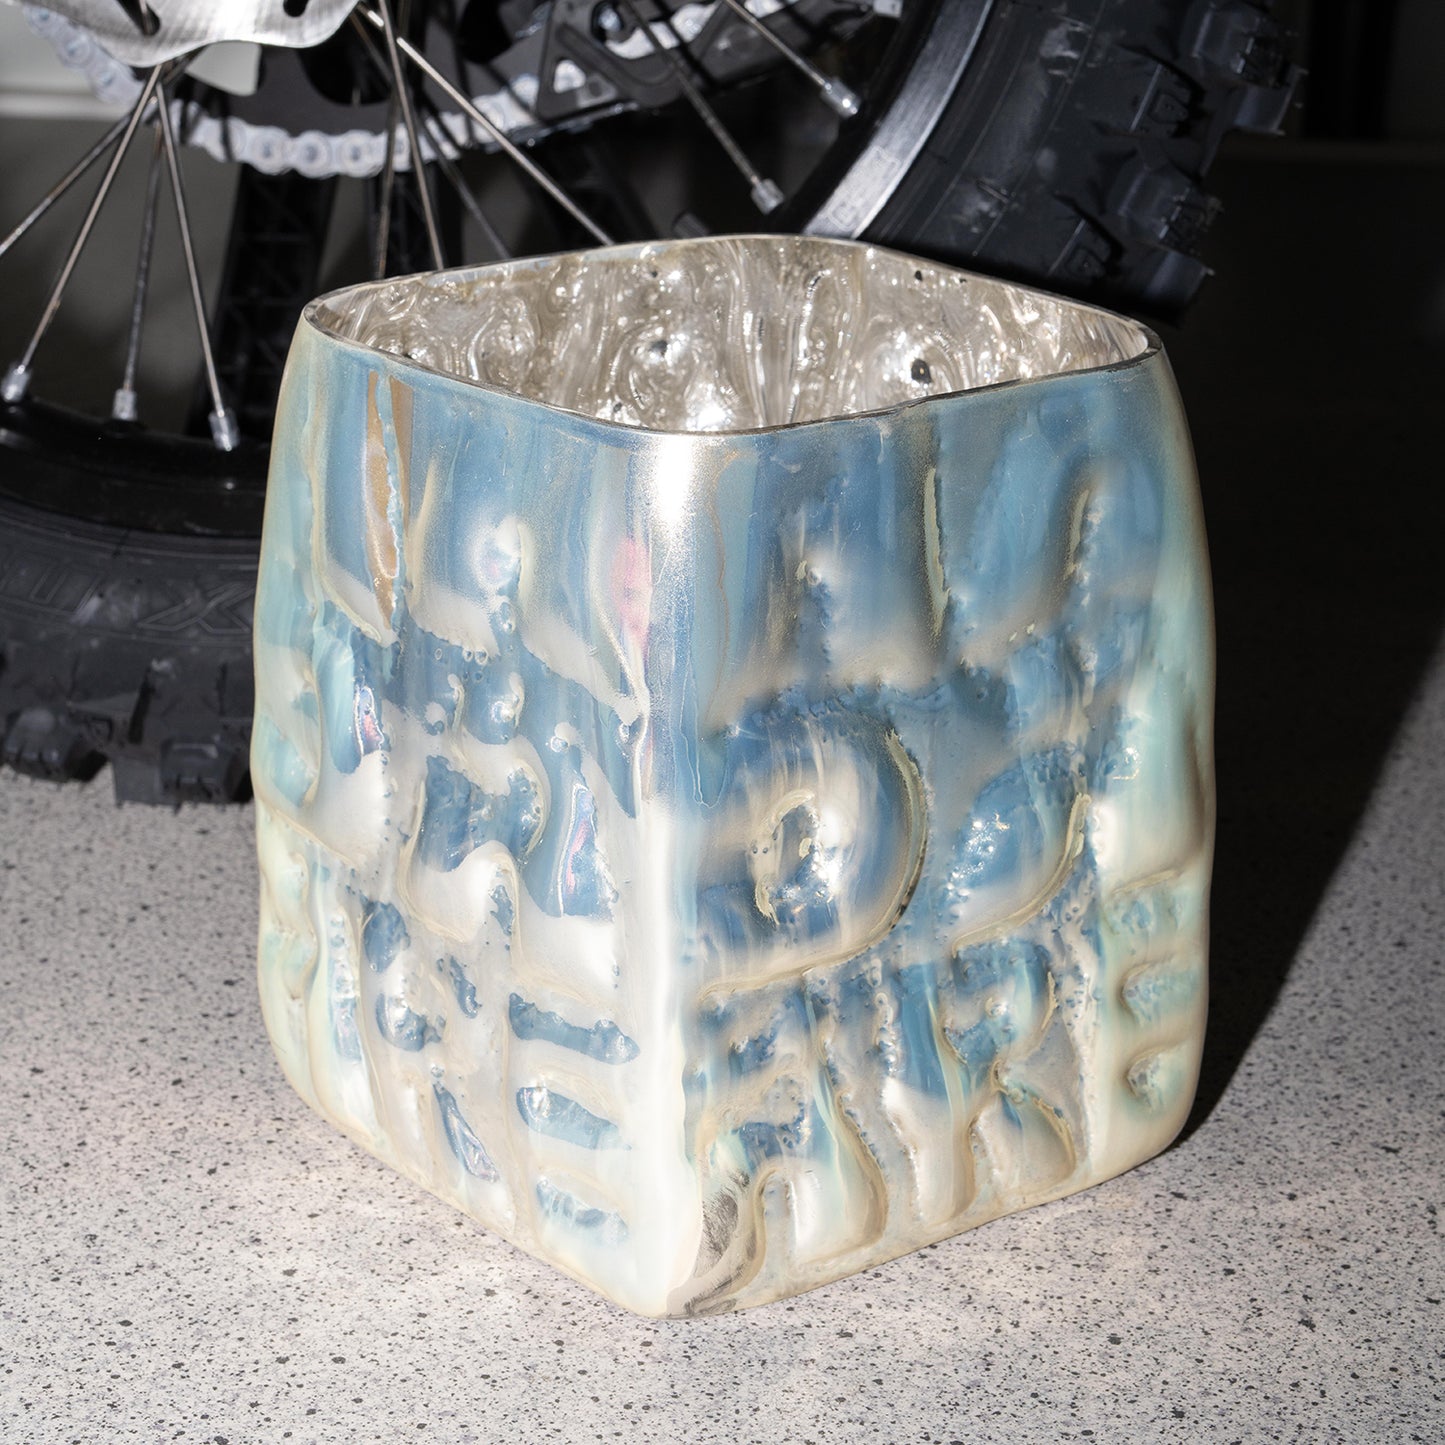 Silver vase "AADÄÄRE" by Studio Reiser